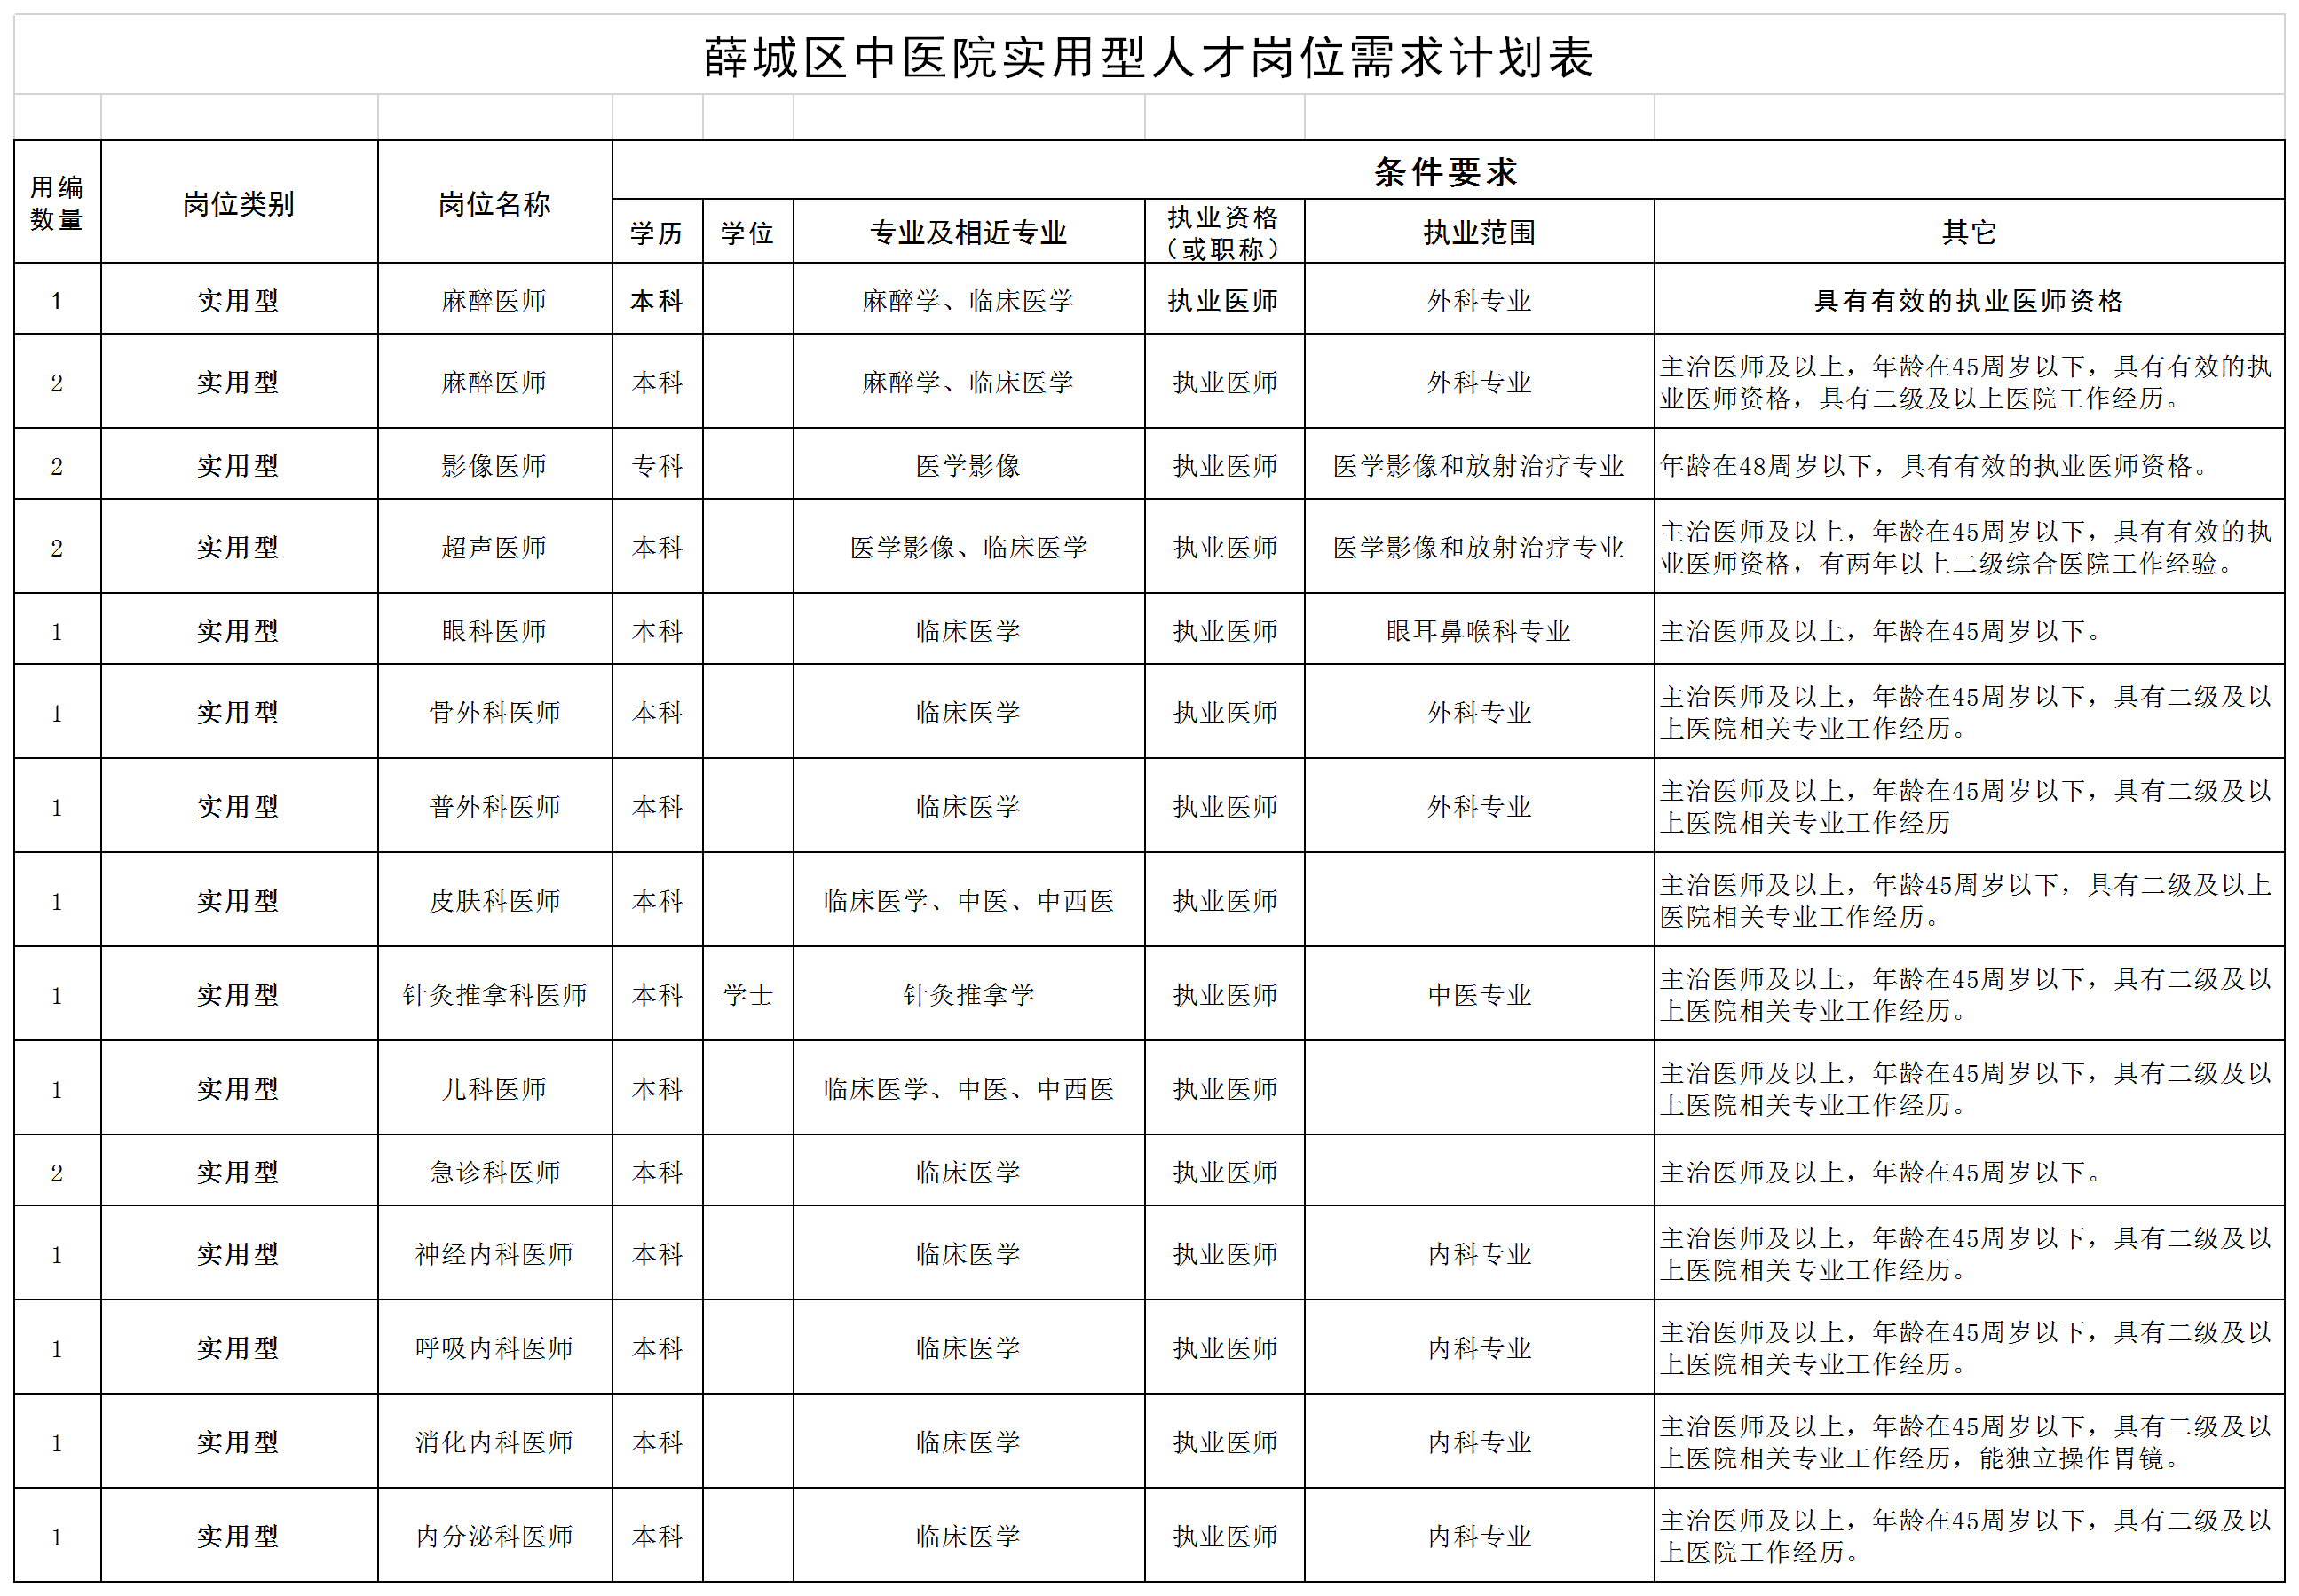 薛城区中医院实用型人才岗位需求计划表.png